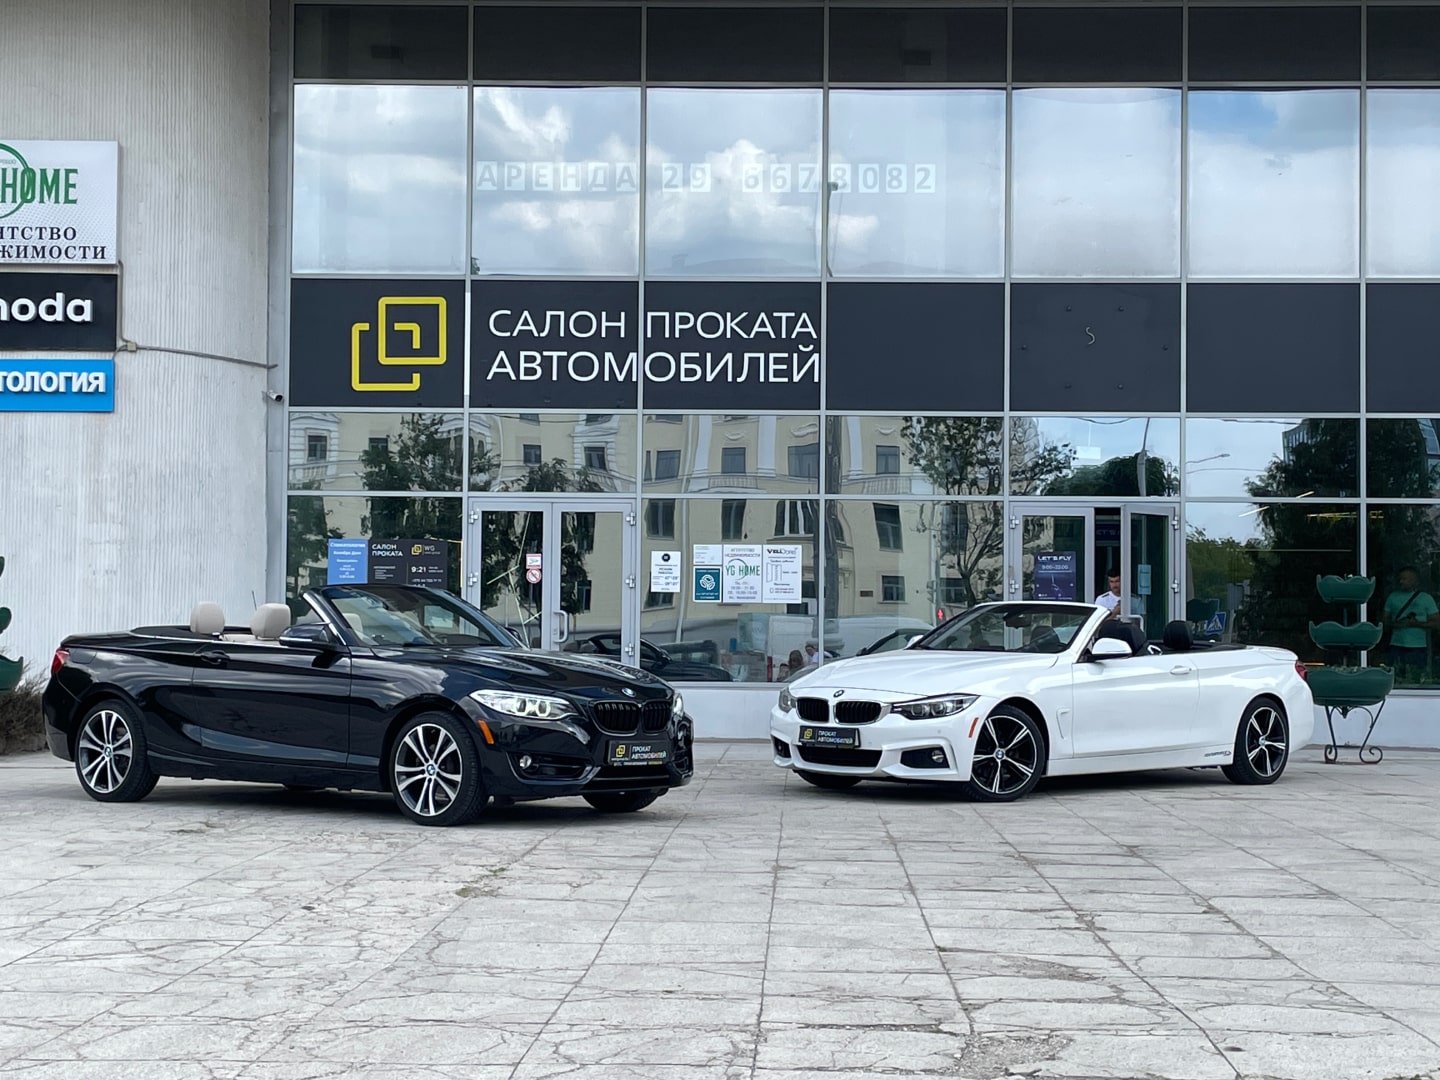 Аренда  BMW 2 Cabrio F22 xDrive  2 класса 2017-2020 года в городе Минск от 109 $/сутки,  двигатель: Бензин , объем 2.0 литров, КАСКО (Мультидрайв), без водителя, вид 12 - West Group